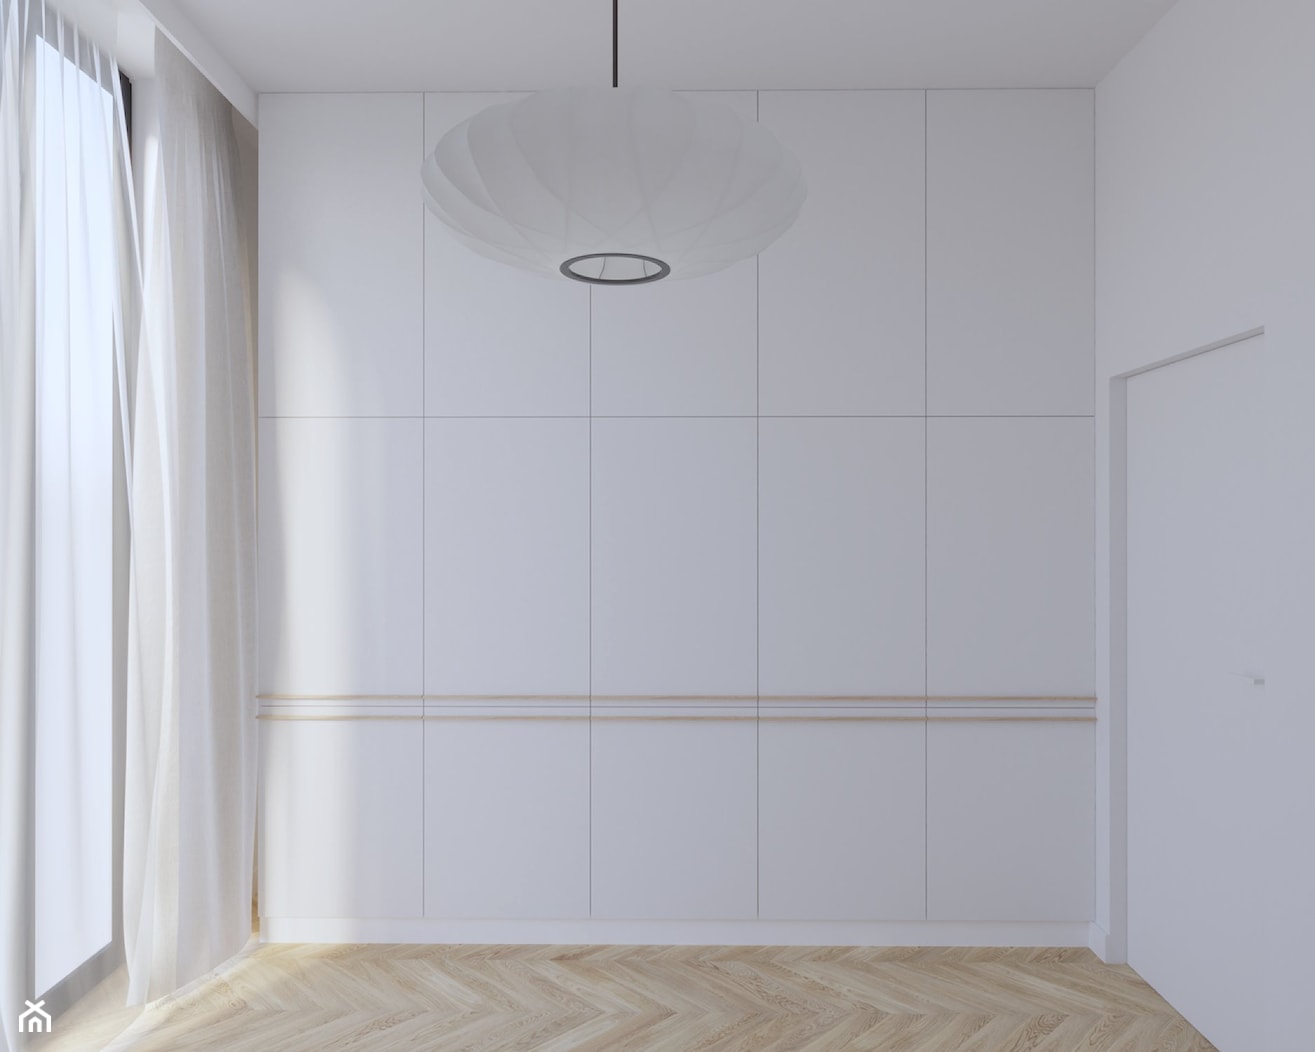 Powiśle - 54 m.² - Mała biała sypialnia, styl minimalistyczny - zdjęcie od Studio Monocco - Homebook